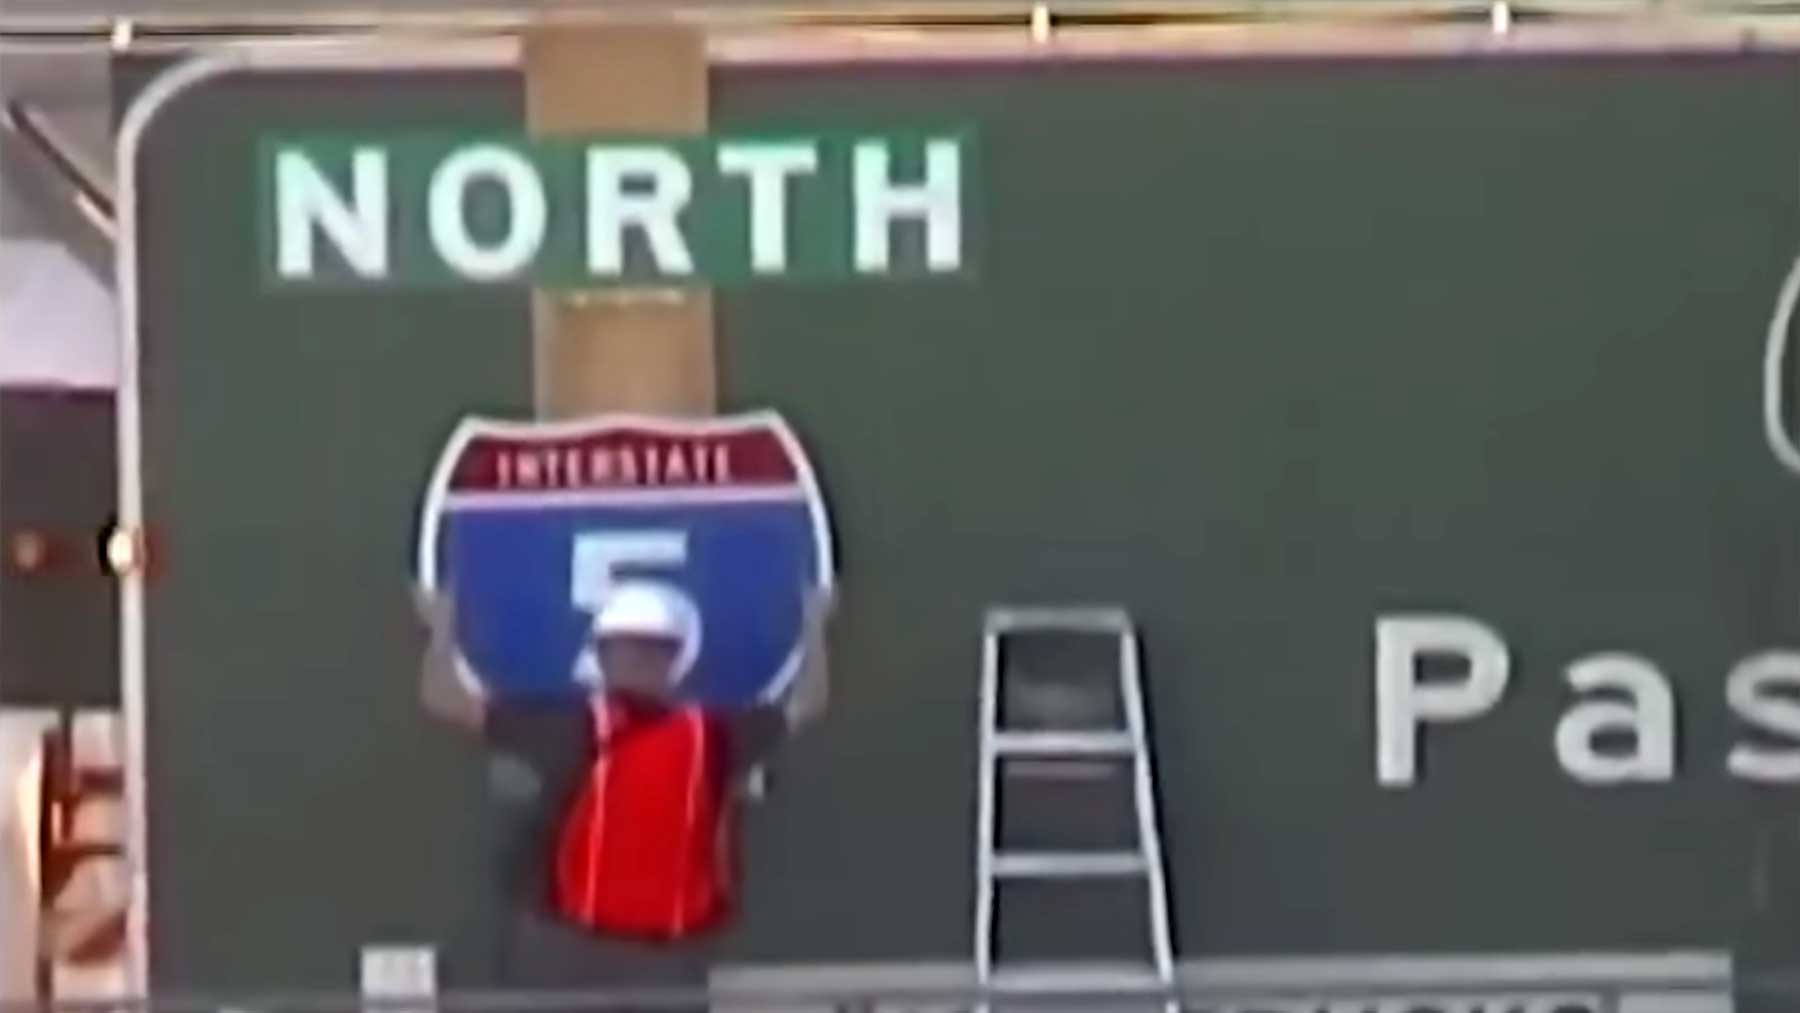 Street Artist verändert Autobahnschild & hilft damit etlichen Autofahrenden Guerilla-Public-Service-street-art-autobahnschild-angebracht 